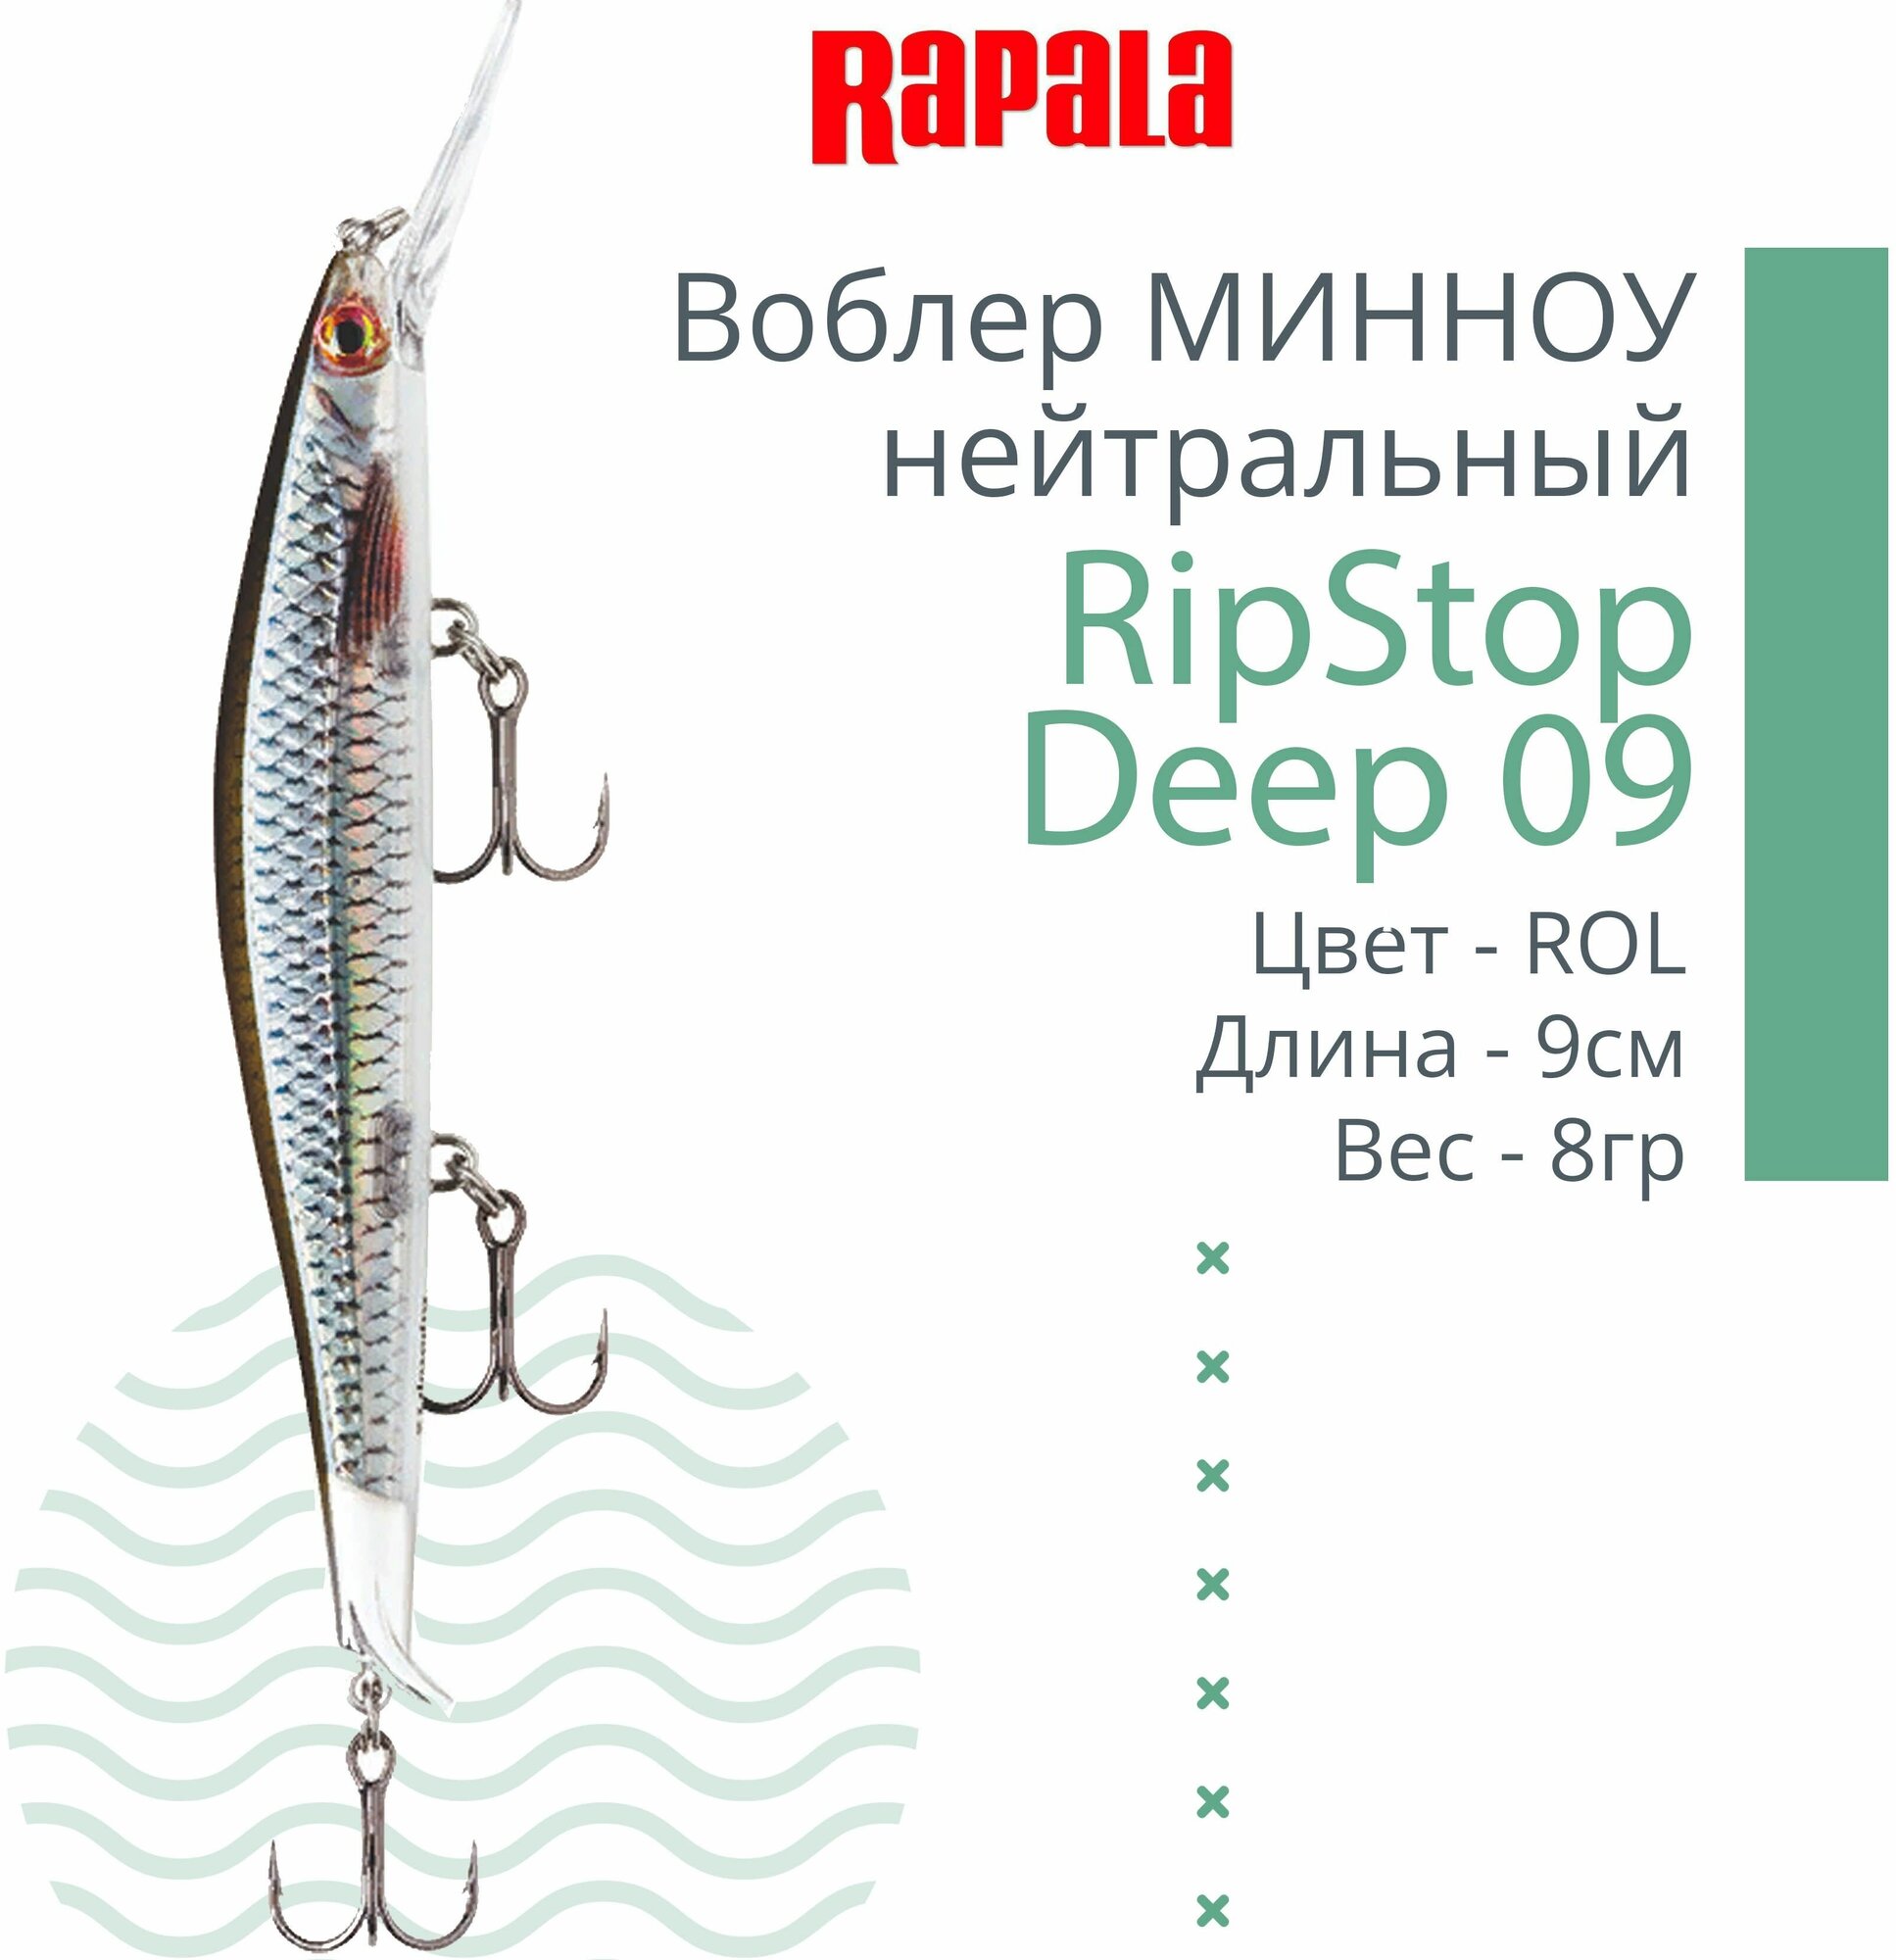 Воблер для рыбалки RAPALA RipStop Deep 09, 9см, 8гр, цвет ROL, нейтральный